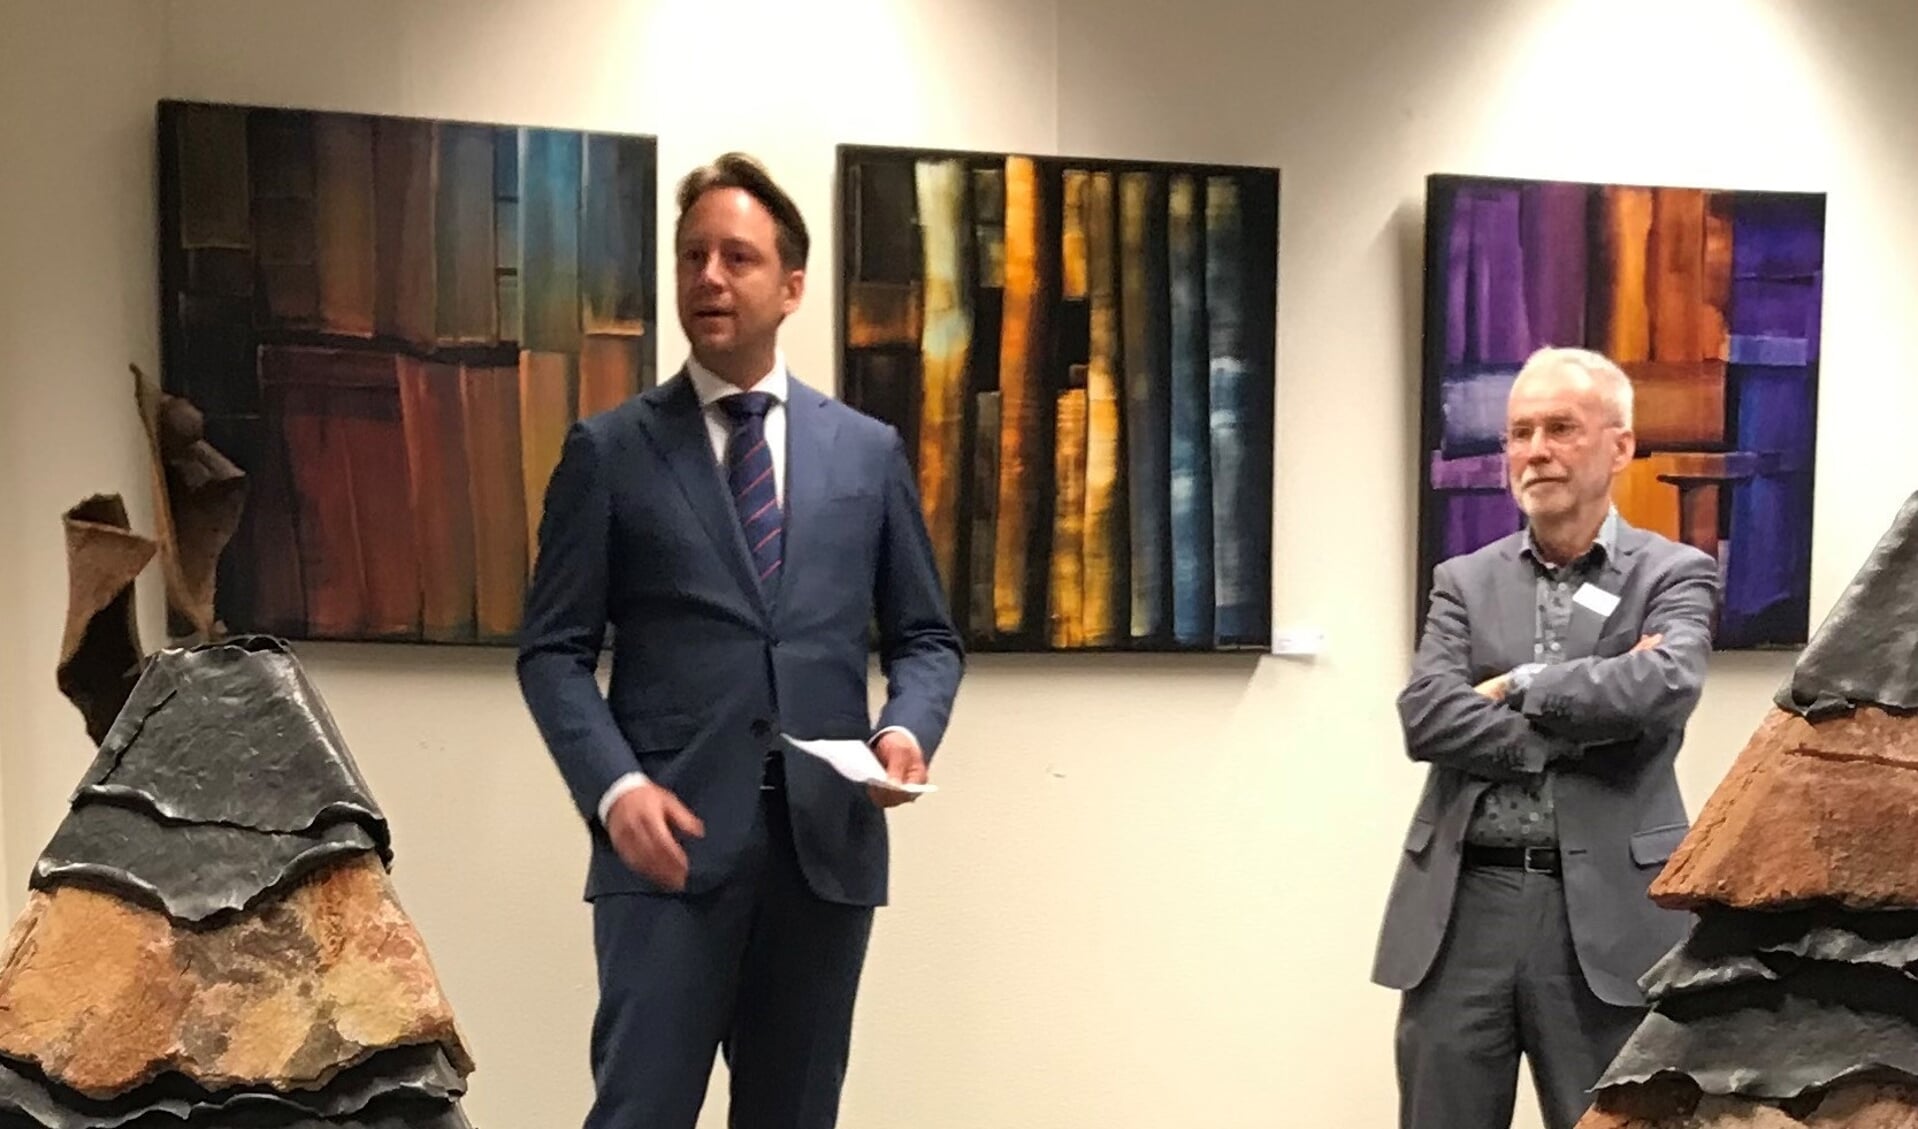 Wethouder Paul de Bruijn (l) en VKK-voorzitter Bert Westra midden tussen de prachtige kunst bij de opening van de expositie WeerZien op 26 februari in Den Haag. (Foto: Jozef Sloots)